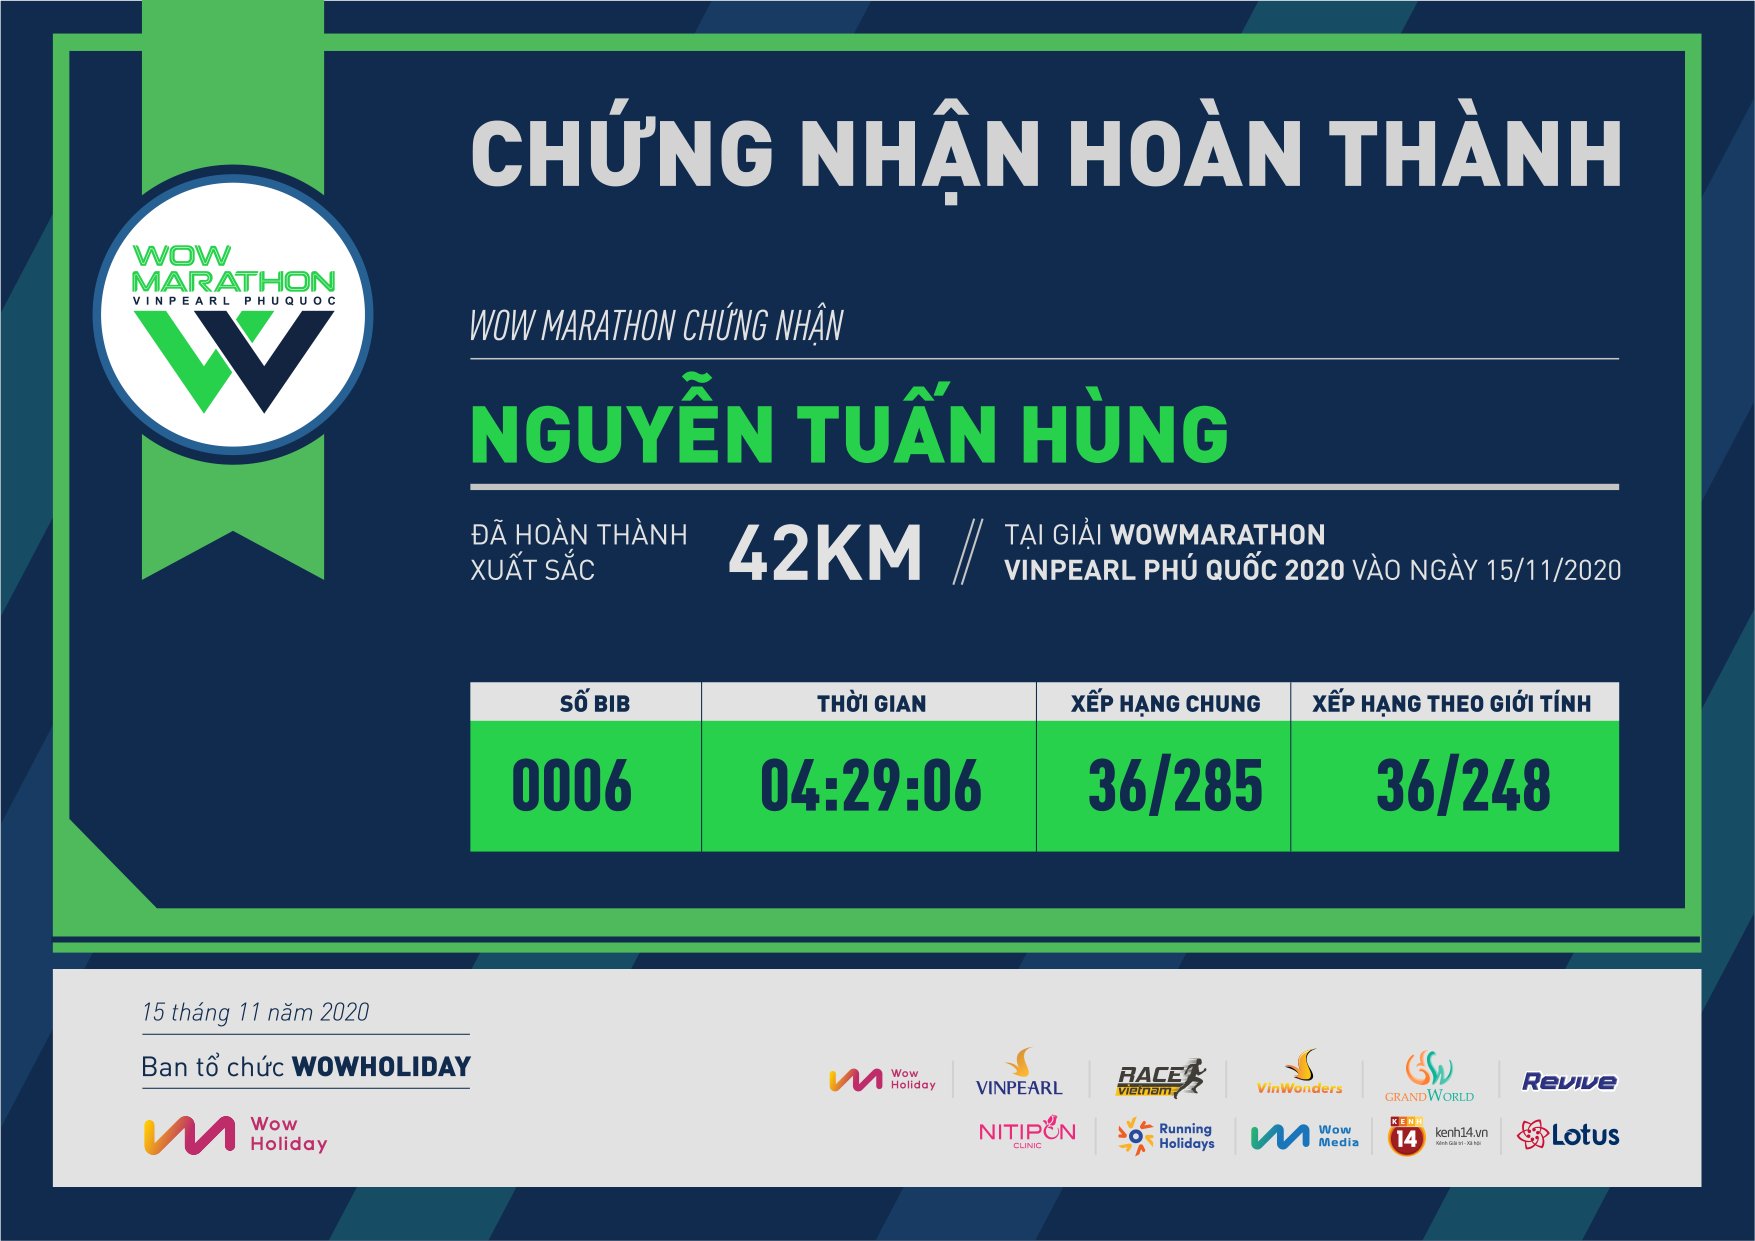 0006 - Nguyễn Tuấn Hùng